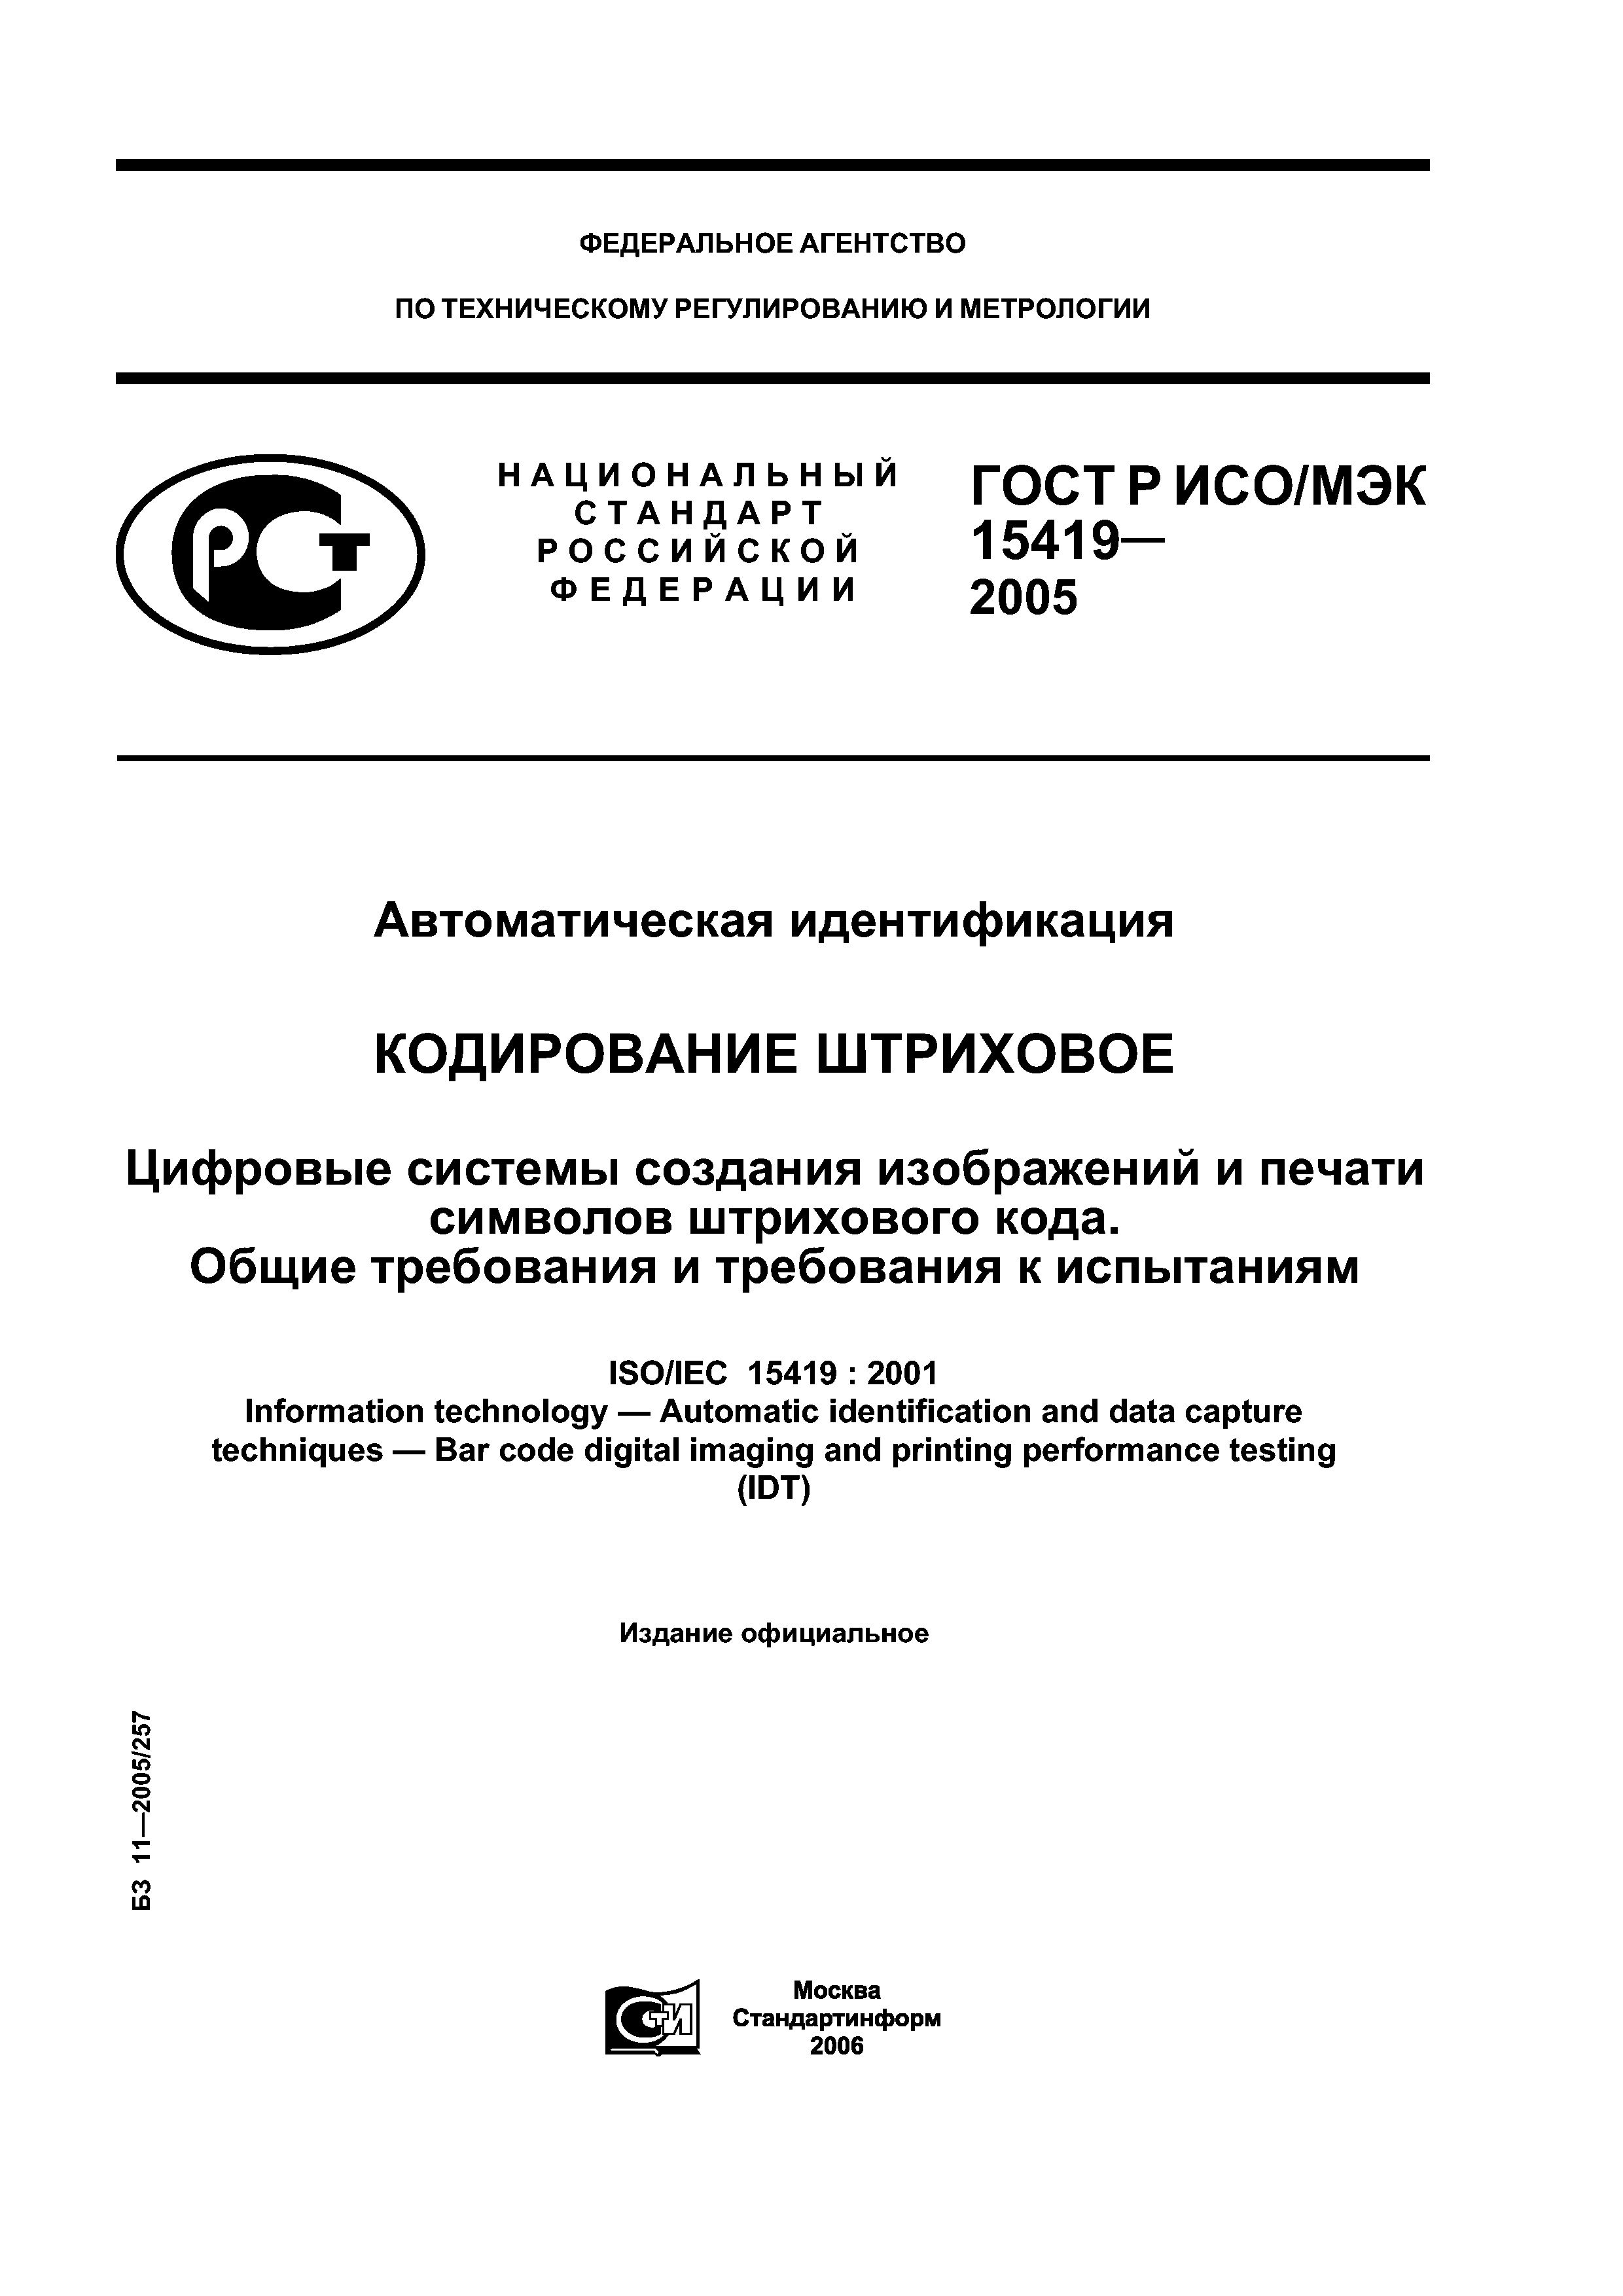 ГОСТ Р ИСО/МЭК 15419-2005